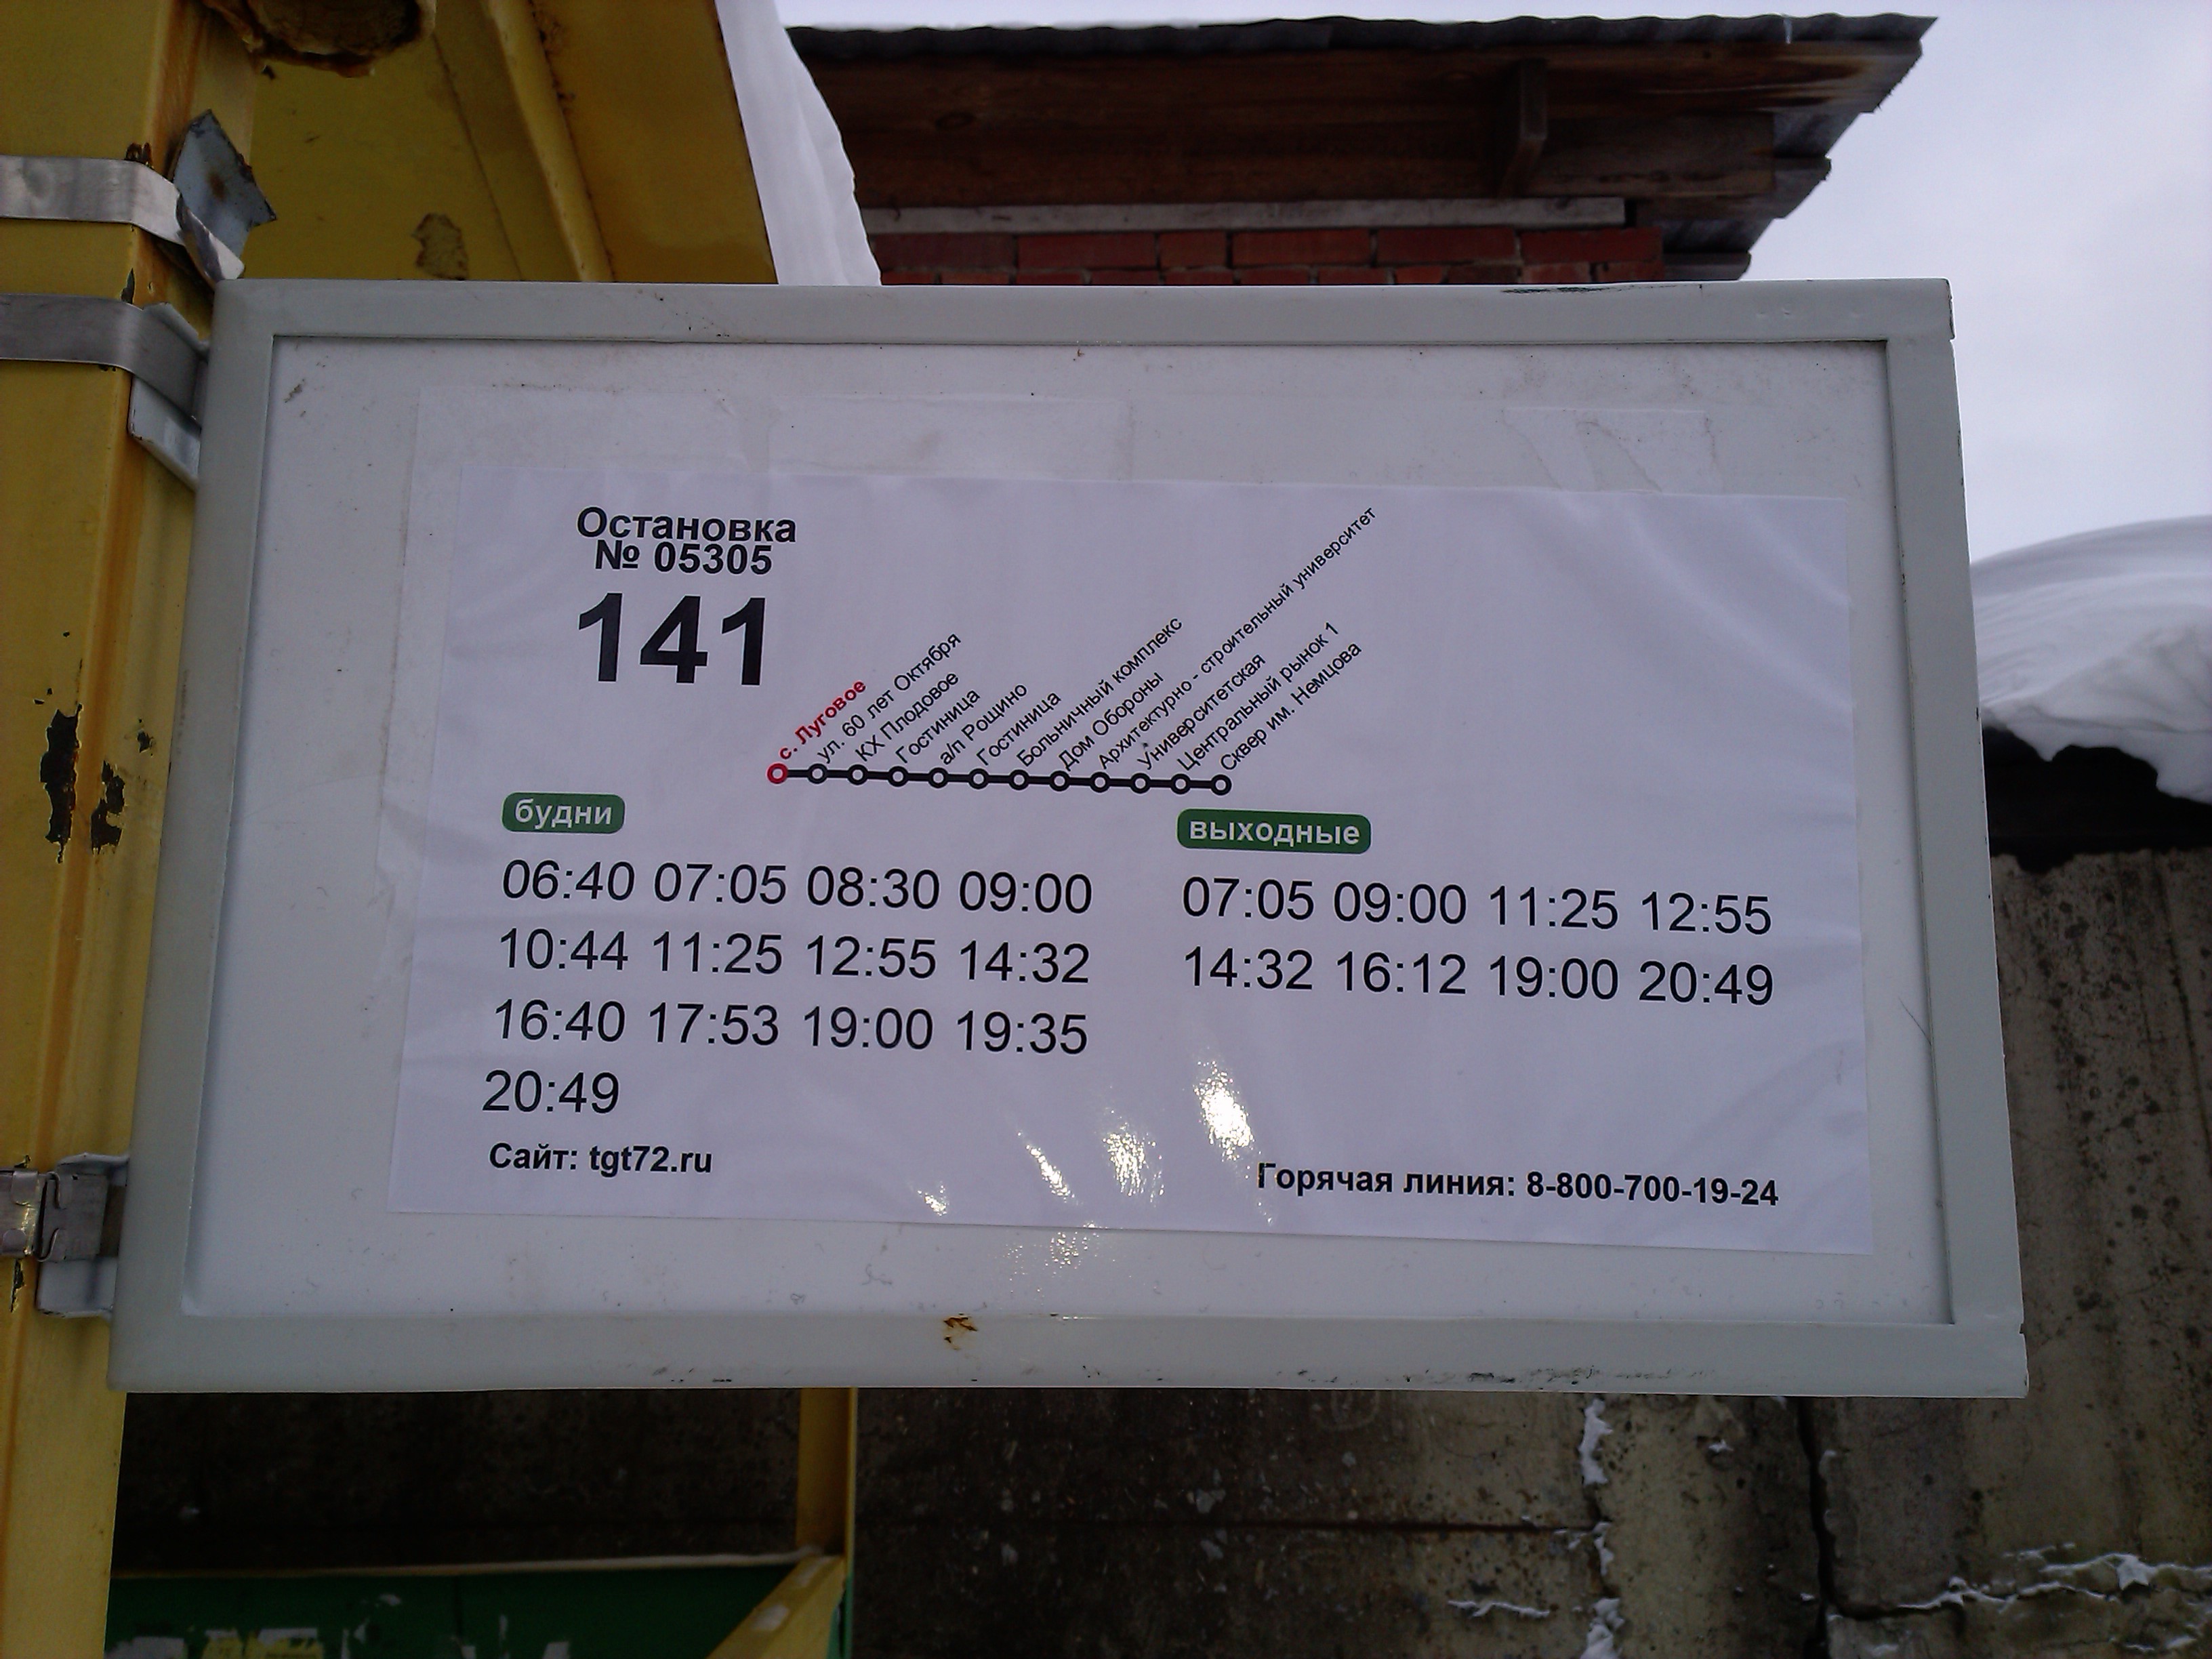 Житель Тюмени сфотографировал расписание автобусного маршрута в селе Луговое - 14.03.2015